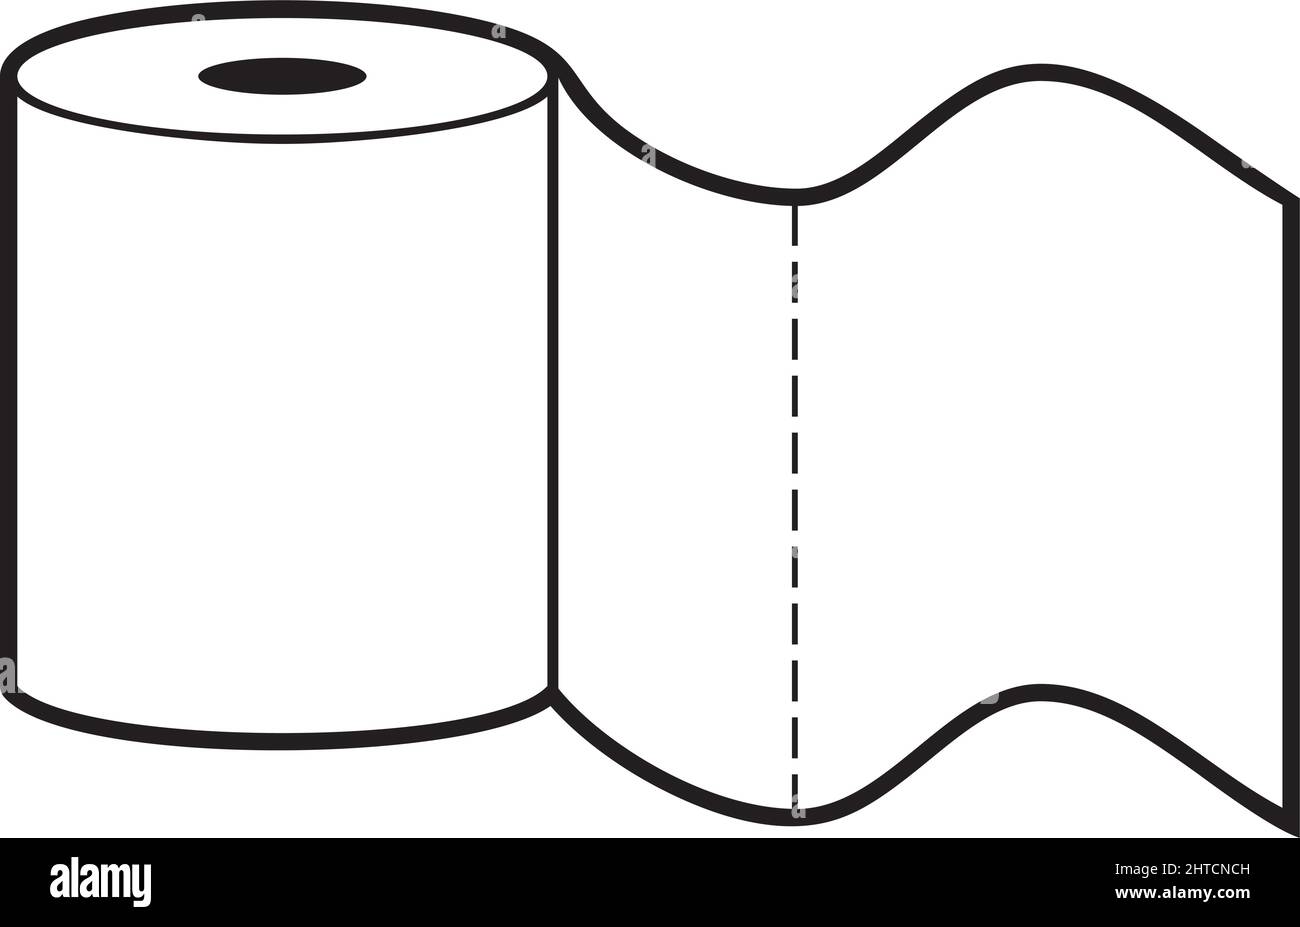 Toilet paper roll - black white vector design Stock Vector